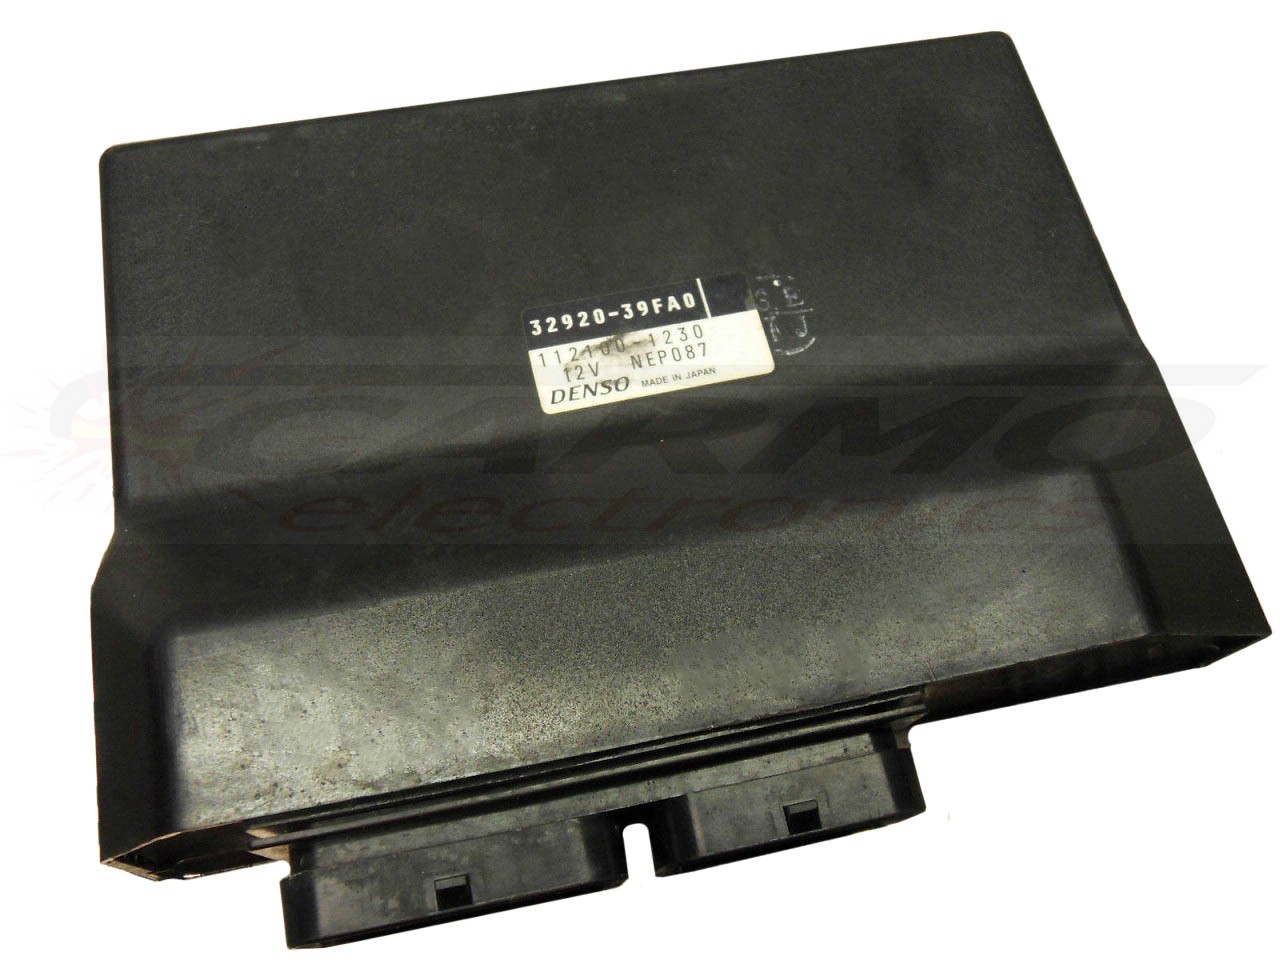 GSXR750 ECU ECM CDI controlador de caixa preta de computador (32920-35F00, 112100-0530)